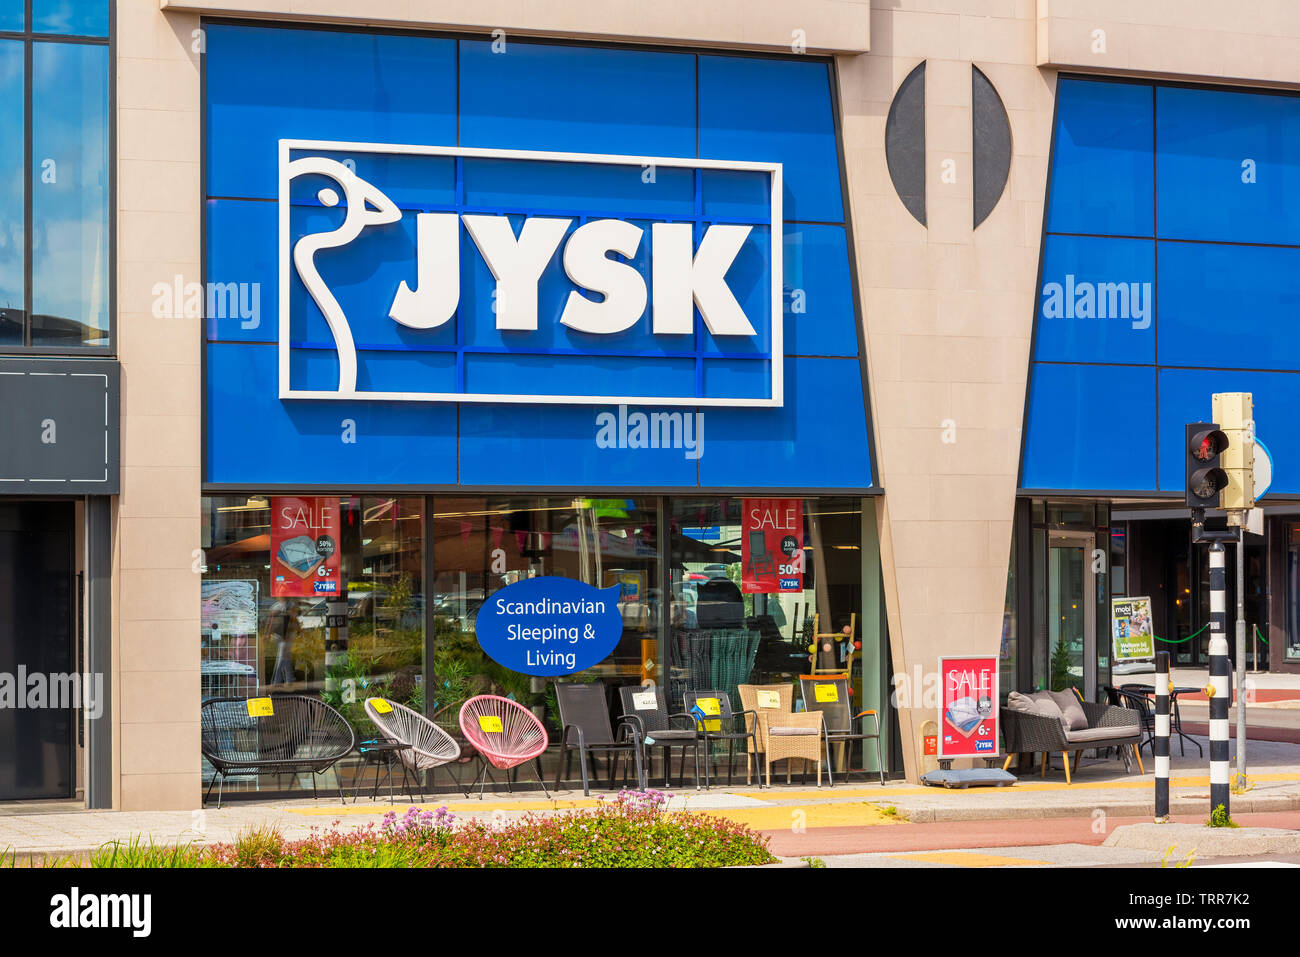 Tienda Jysk en Alkmaar, Países Bajos. Jysk danesa es una cadena de tiendas de muebles para el hogar, opera en 50 países. Foto de stock